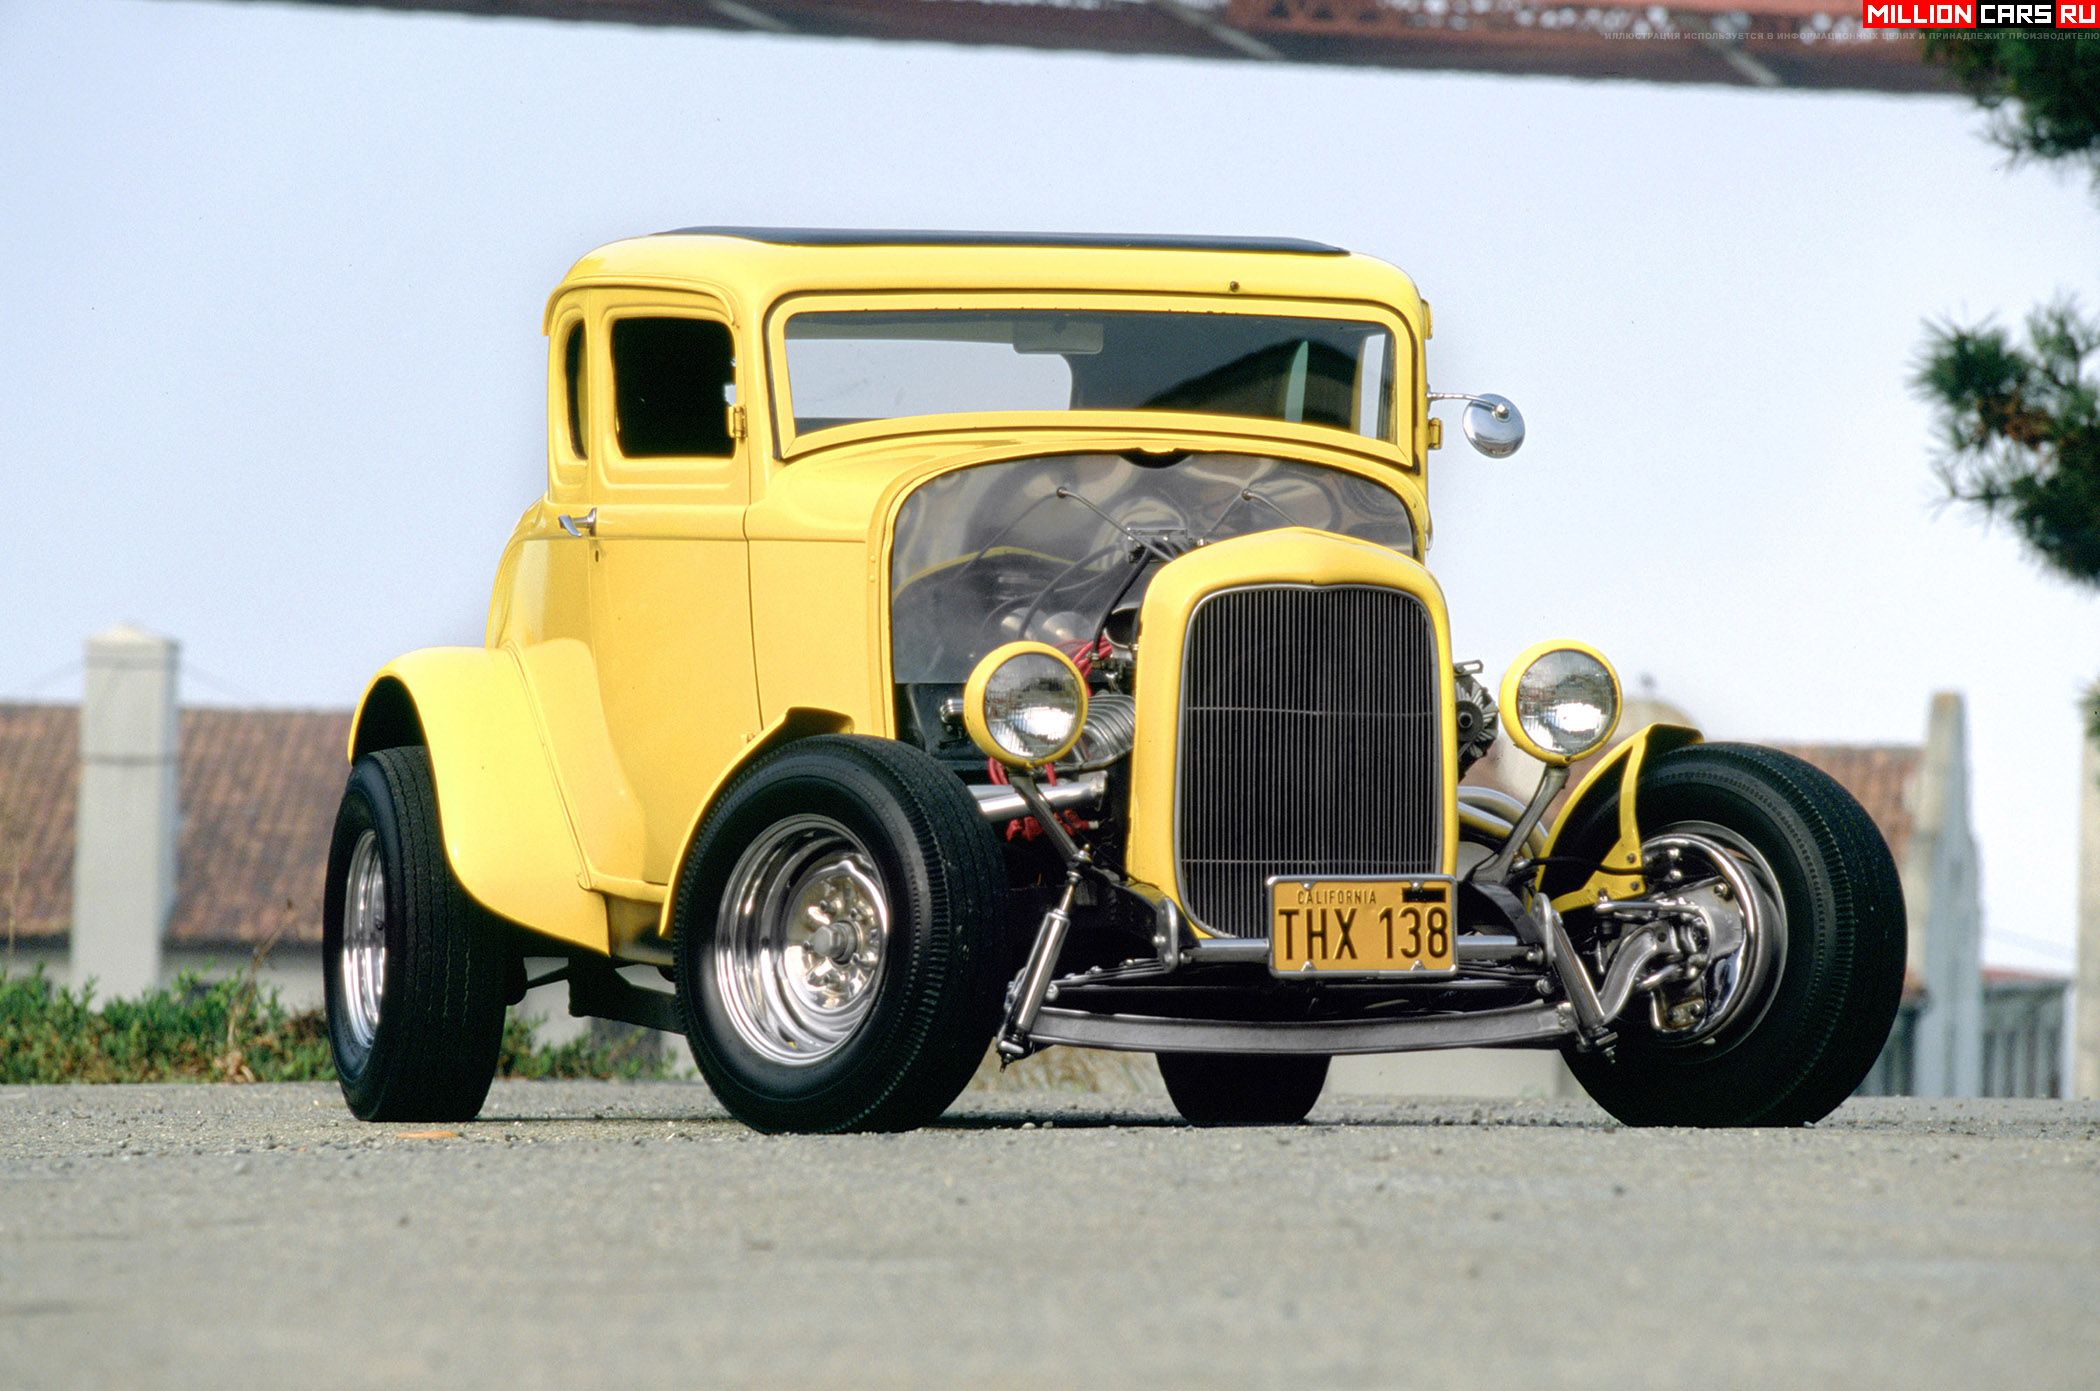 5. American Graffiti -- 1932 Ford Coupe